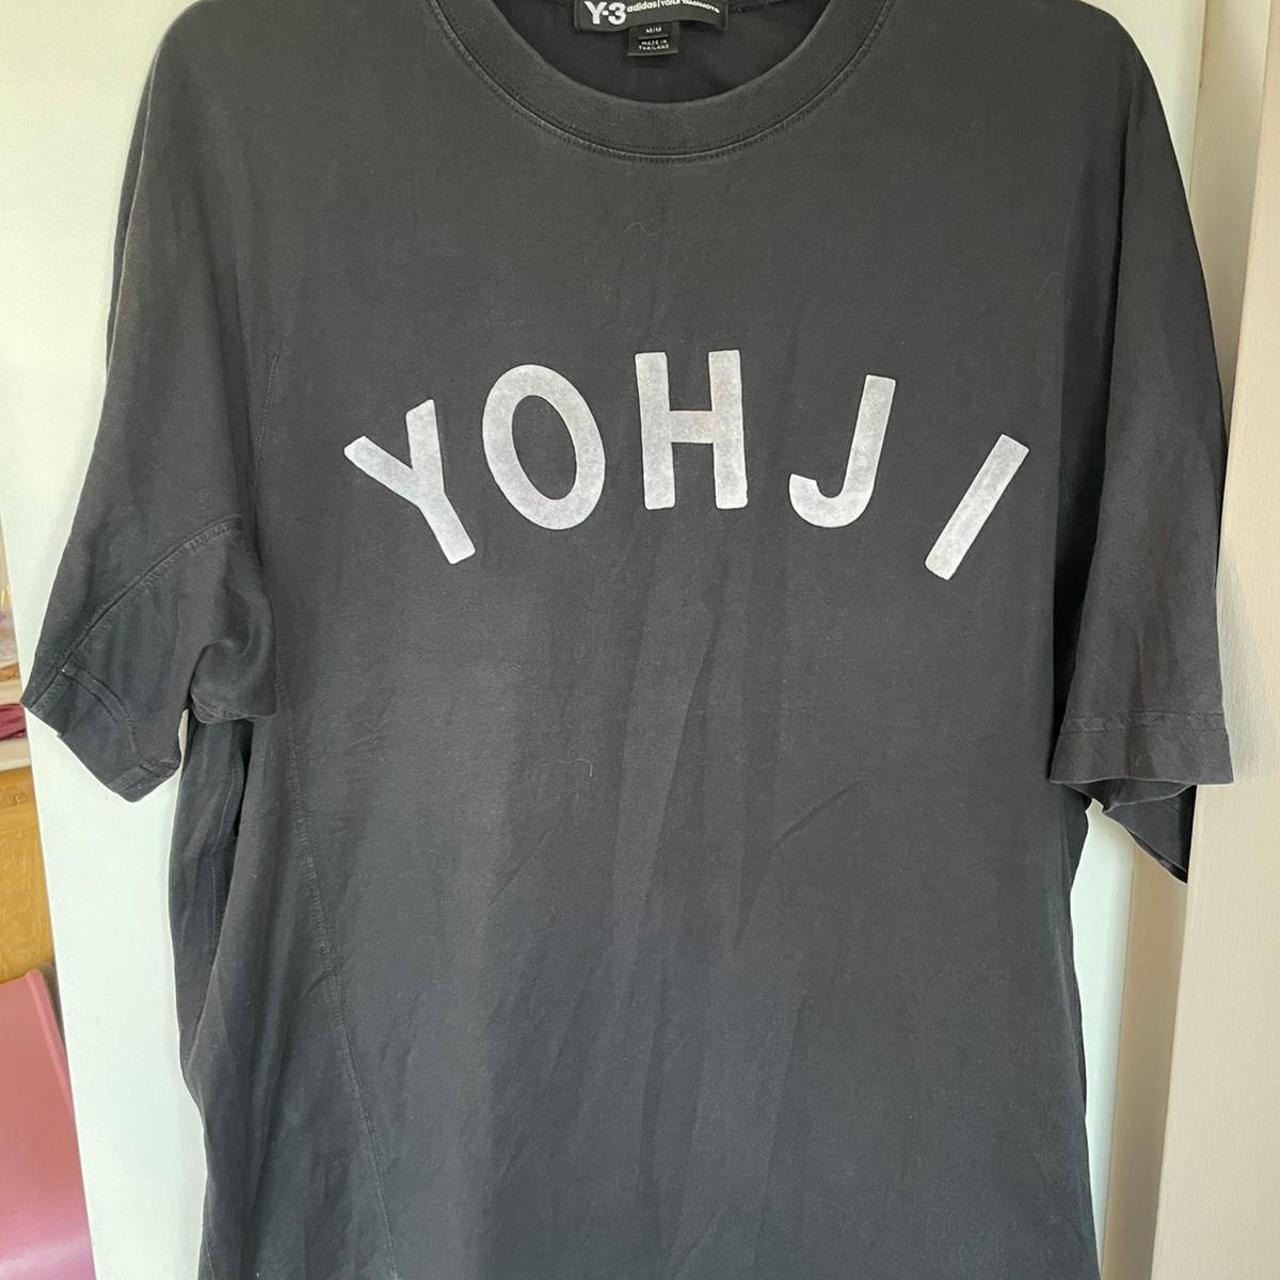 y-3 y3 rare yohji tshirt. Sold out everywhere medium... - Depop